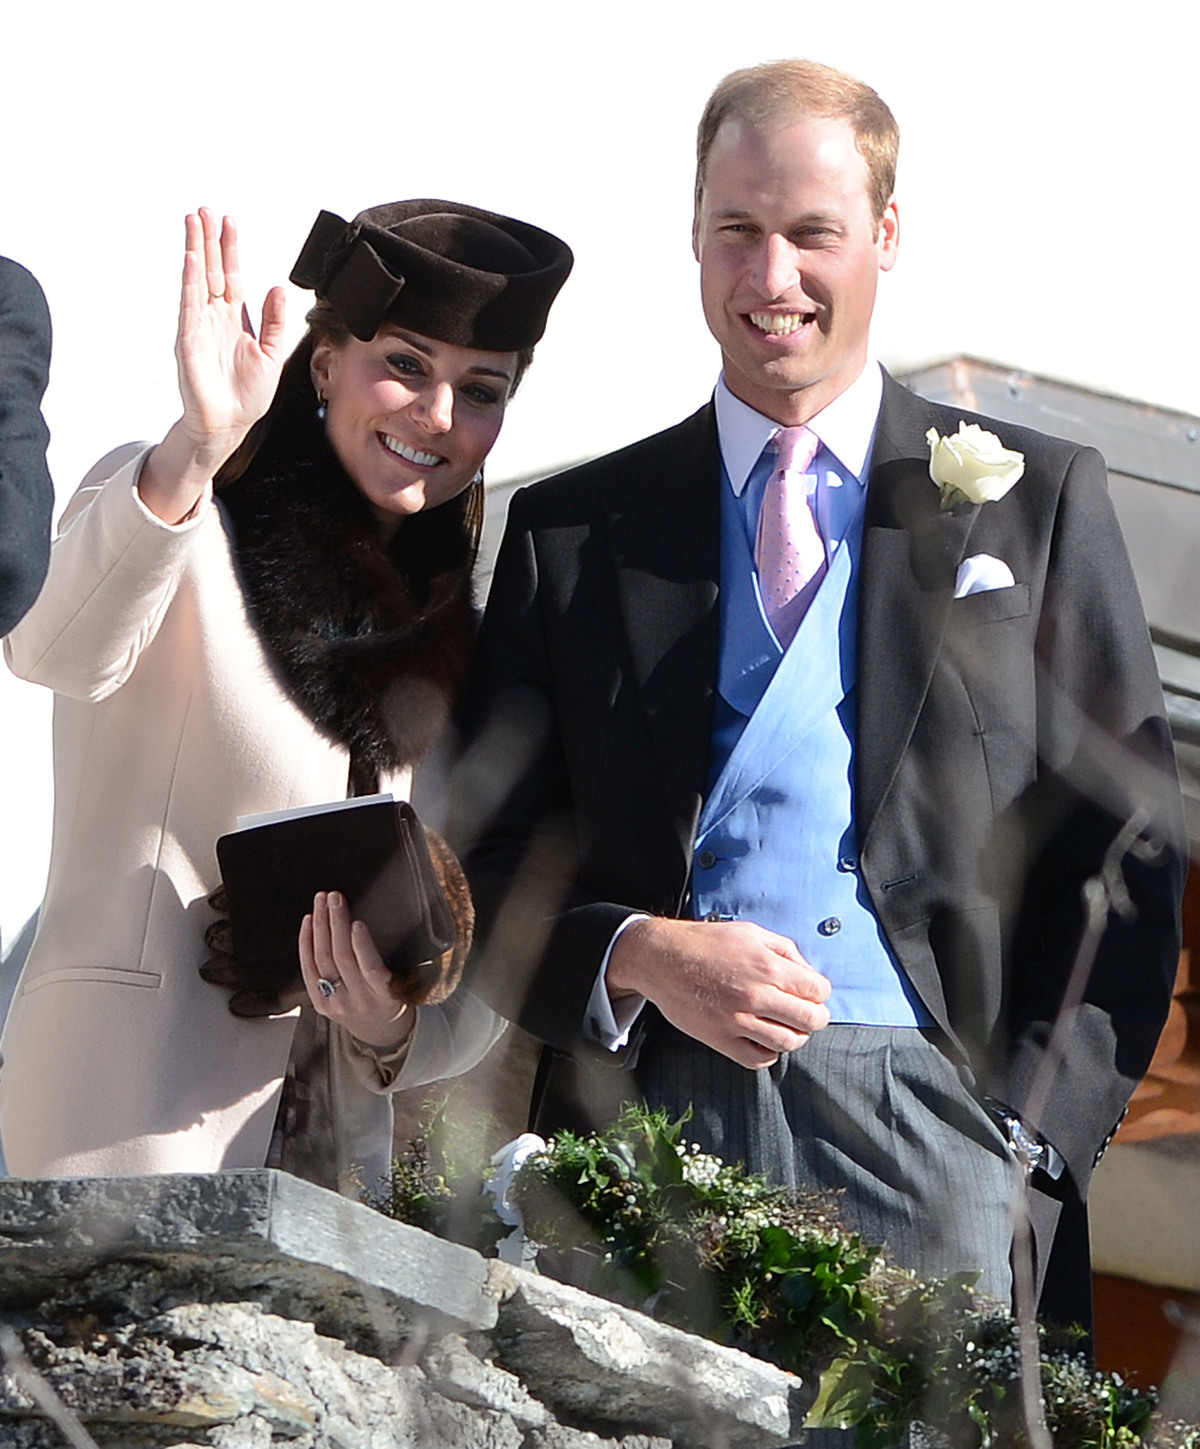 У Кейт Миддлтон и принца Уильяма будет дочь?